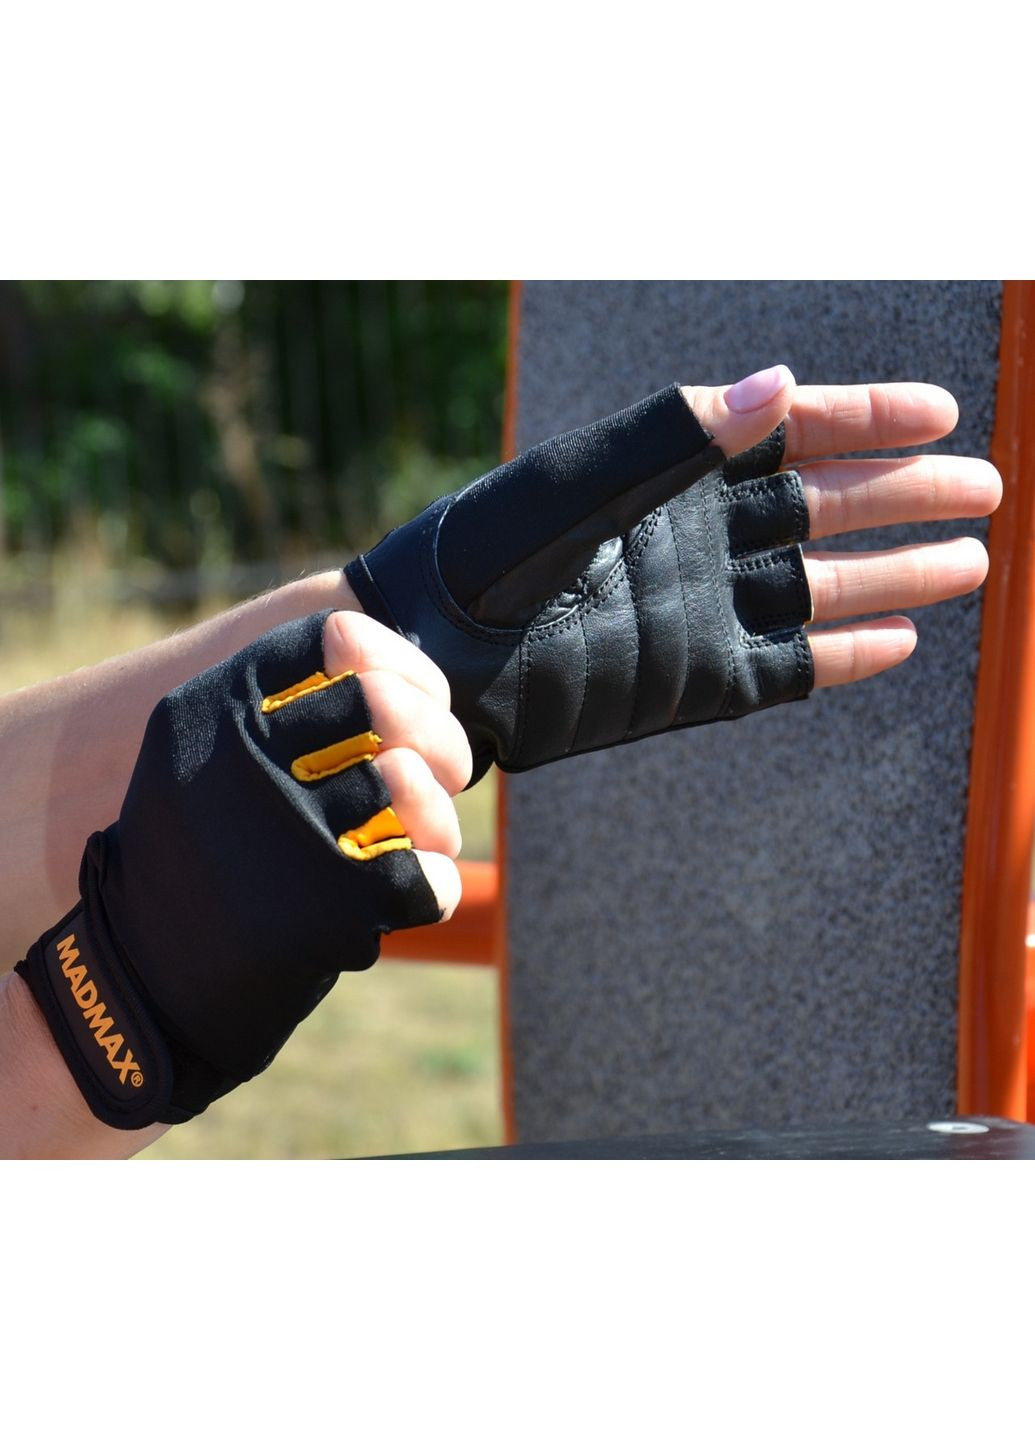 Унисекс перчатки для фитнеса M Mad Max (279323299)